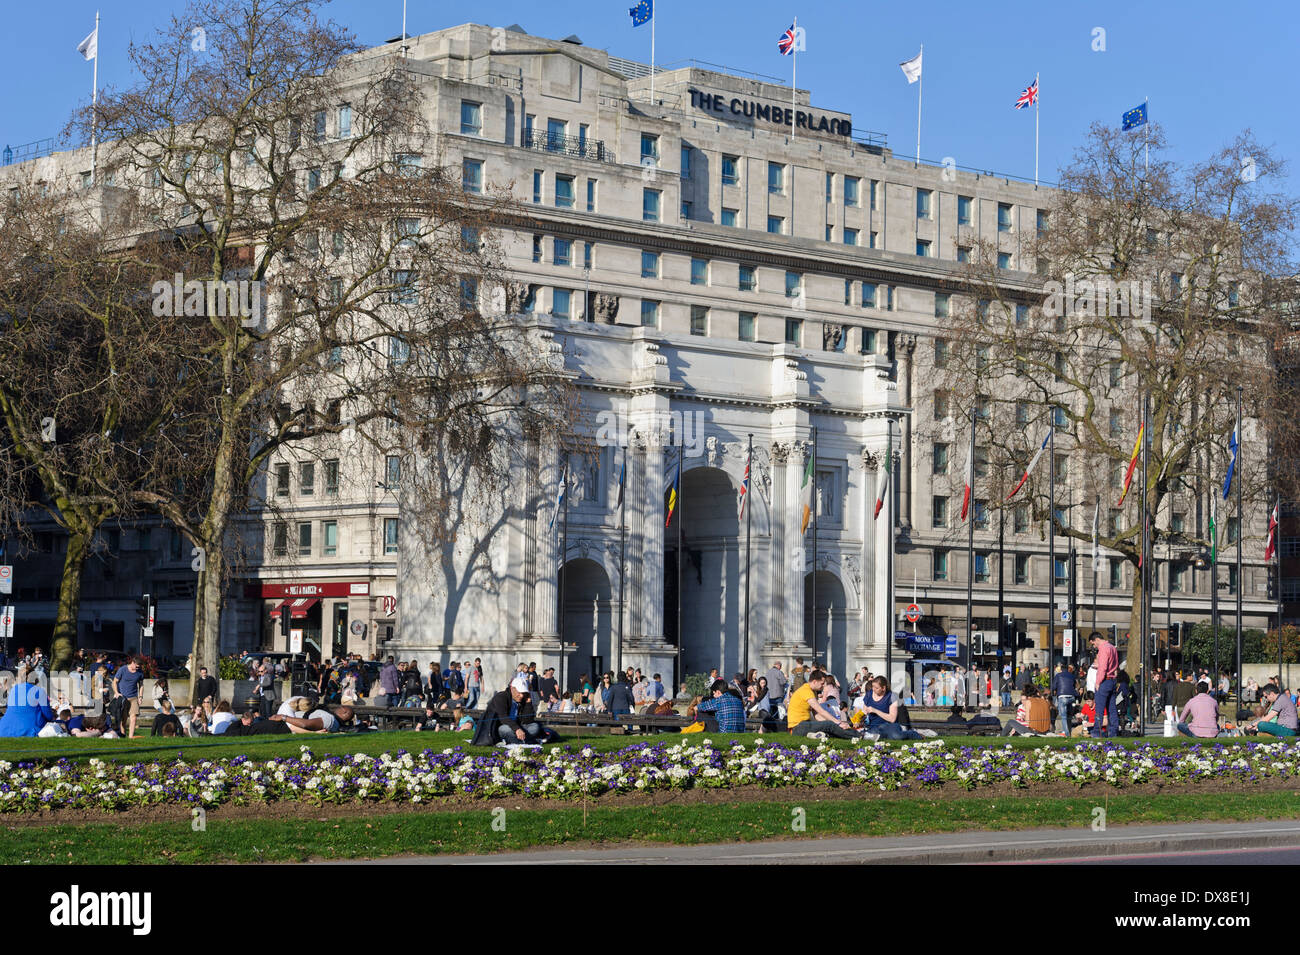 Menschen genießen die Briten warmes Wetter am Hyde Park Corner von Marble Arch Denkmal, London, England, Vereinigtes Königreich. Stockfoto